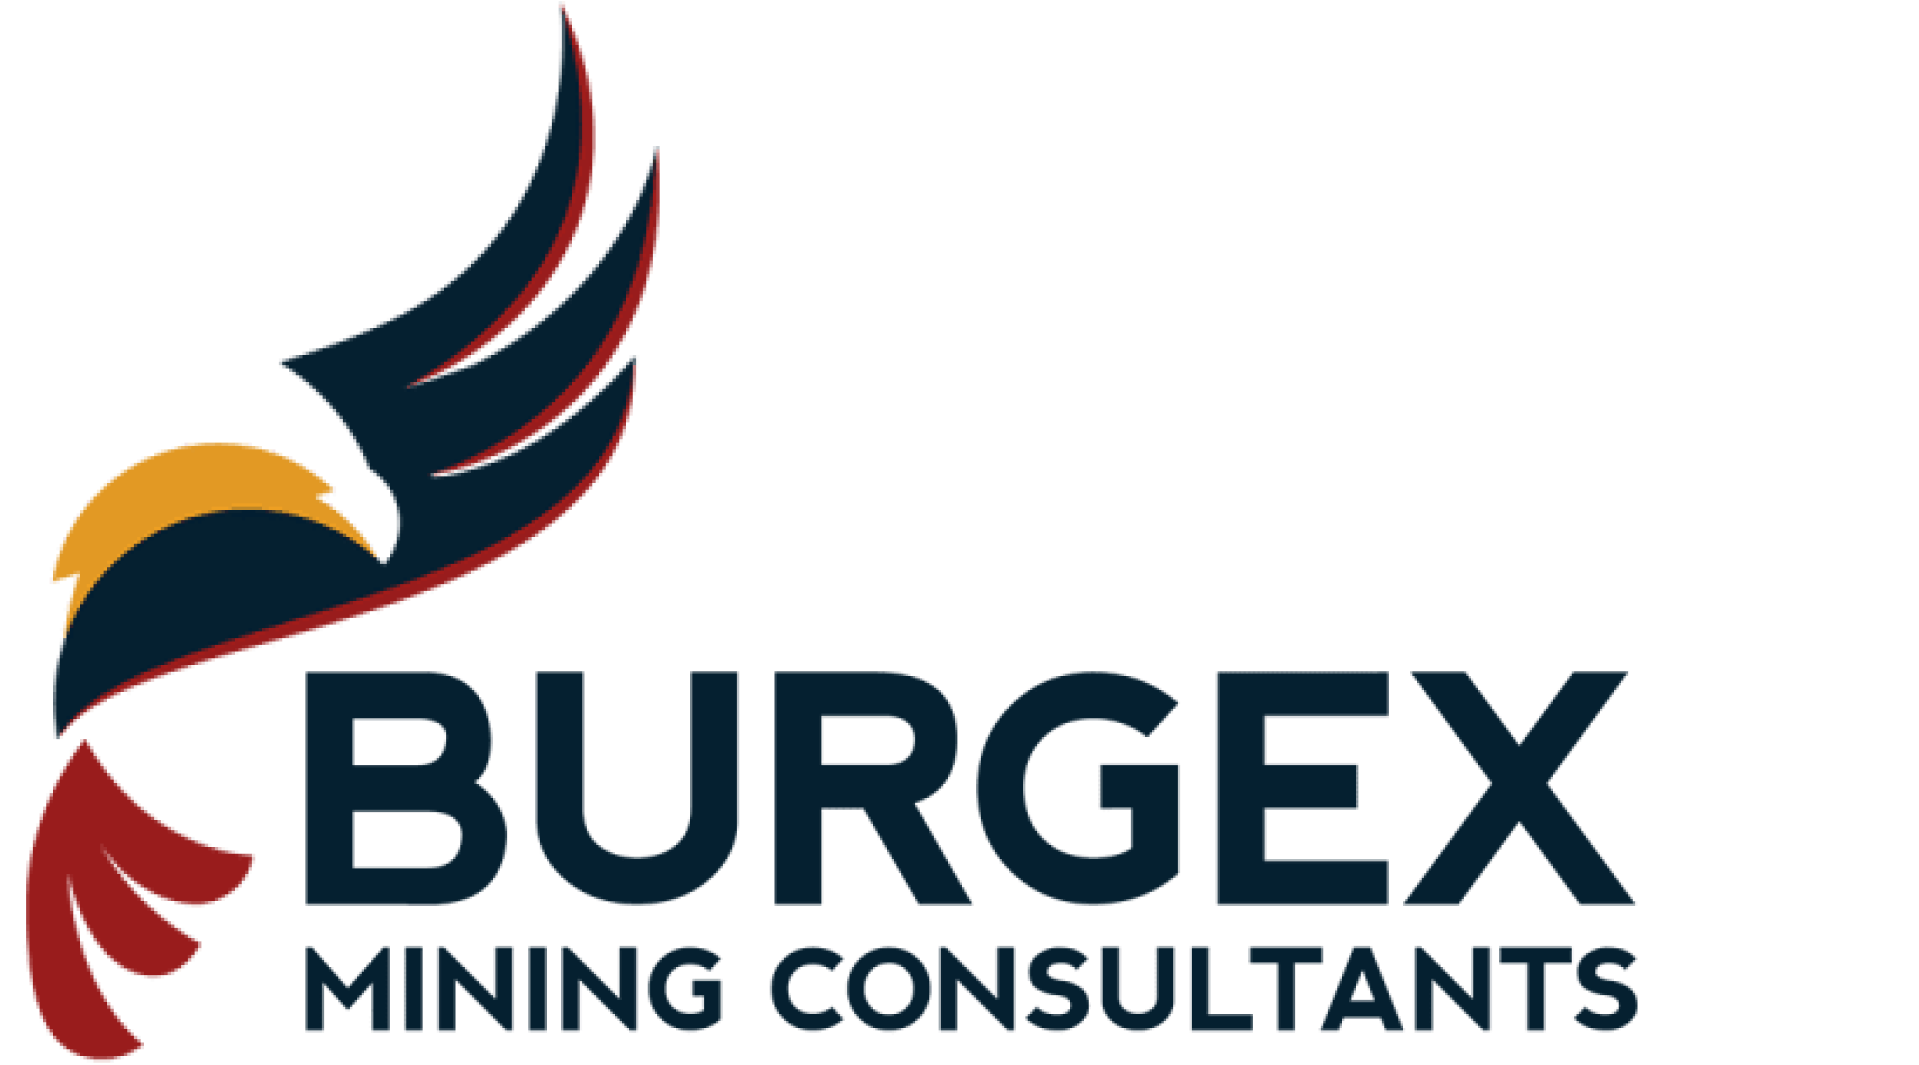 Burgex Mining Consultants